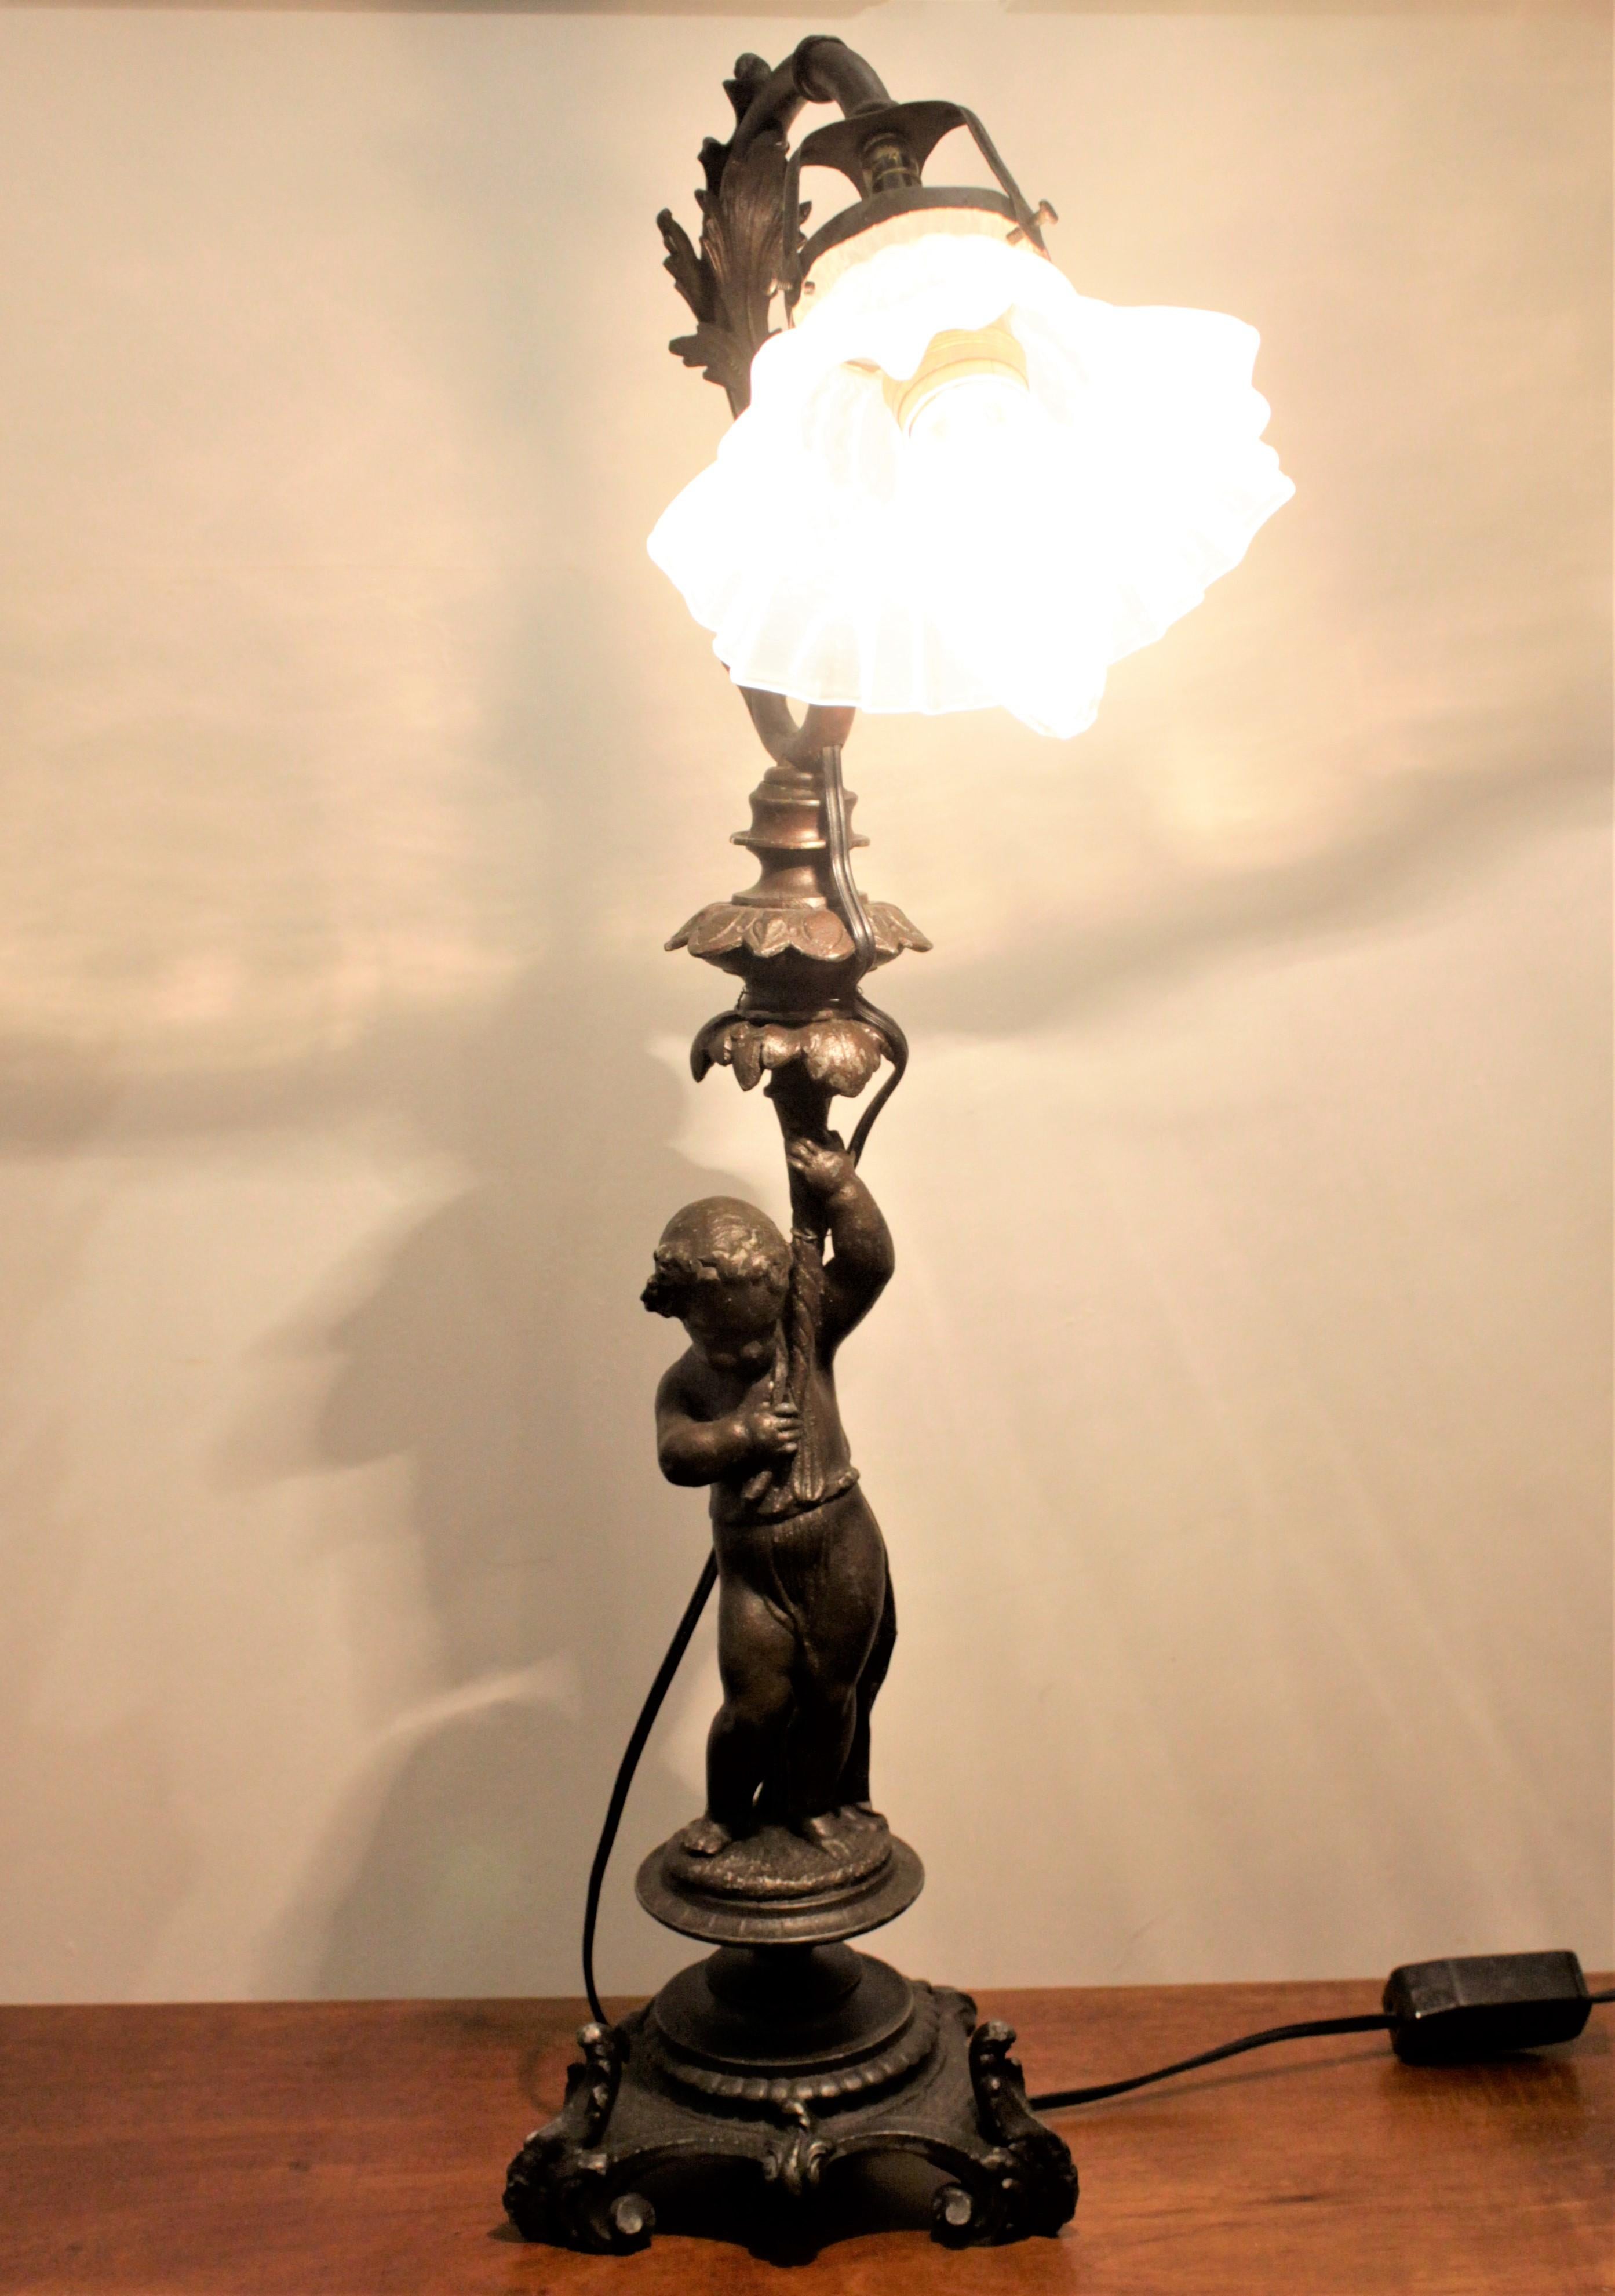 Cette lampe chérubin antique en fonte d'étain ne porte pas de marque de fabricant, mais on suppose qu'elle provient d'Italie à la fin du XIXe siècle et qu'elle est de style victorien. La lampe présente un chérubin en fonte ornementale se tenant sur